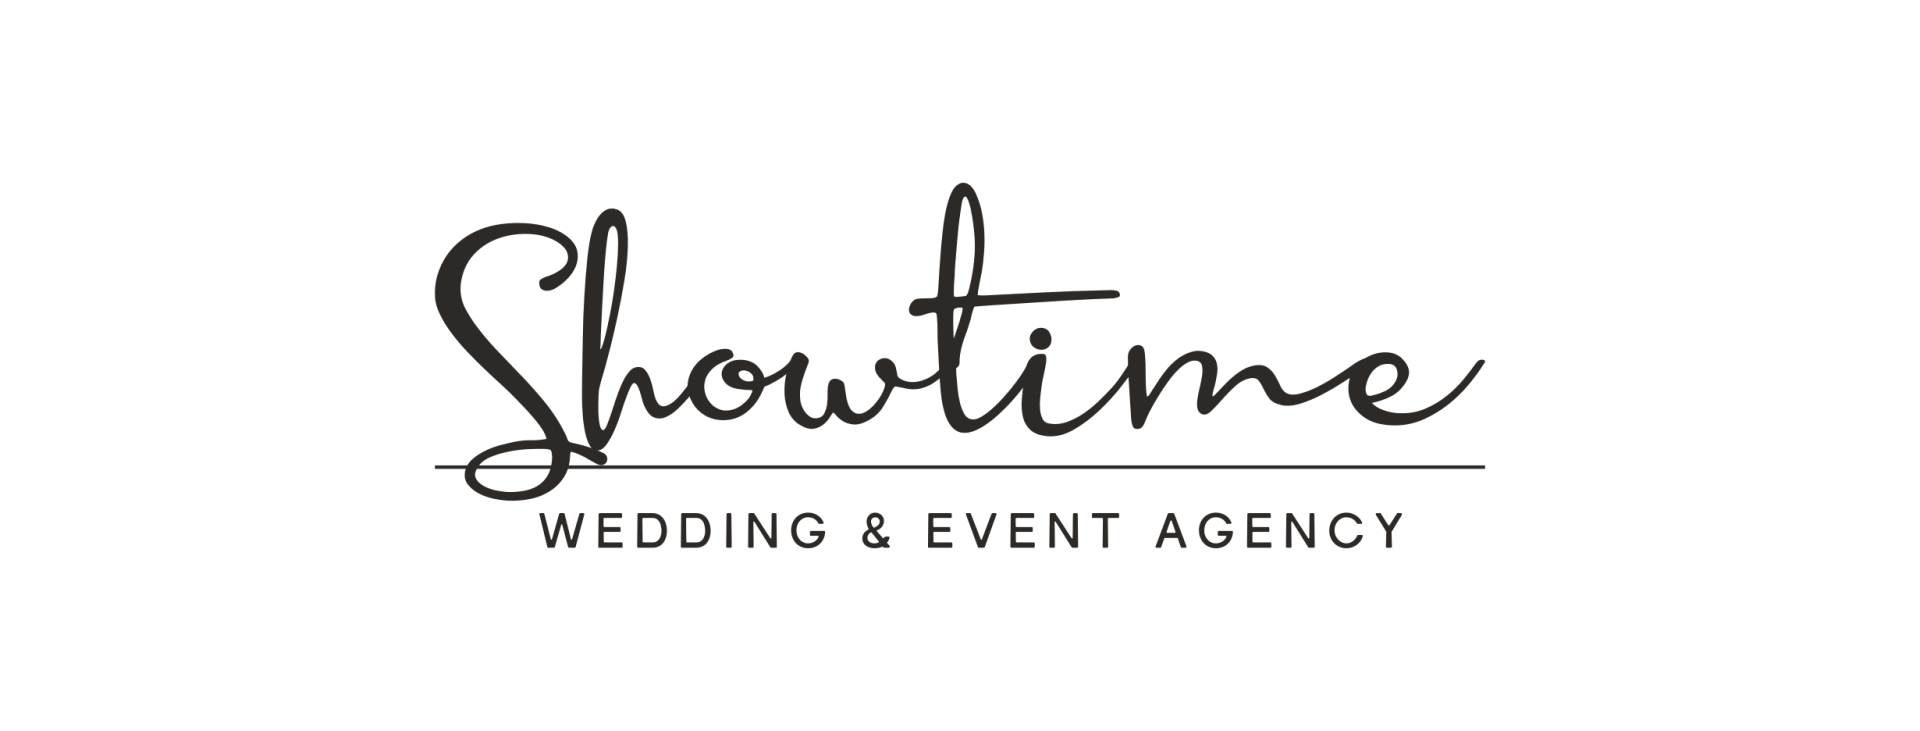 Showtime Wedding & Event Agency | Wedding planner Wrocław, dolnośląskie - cover